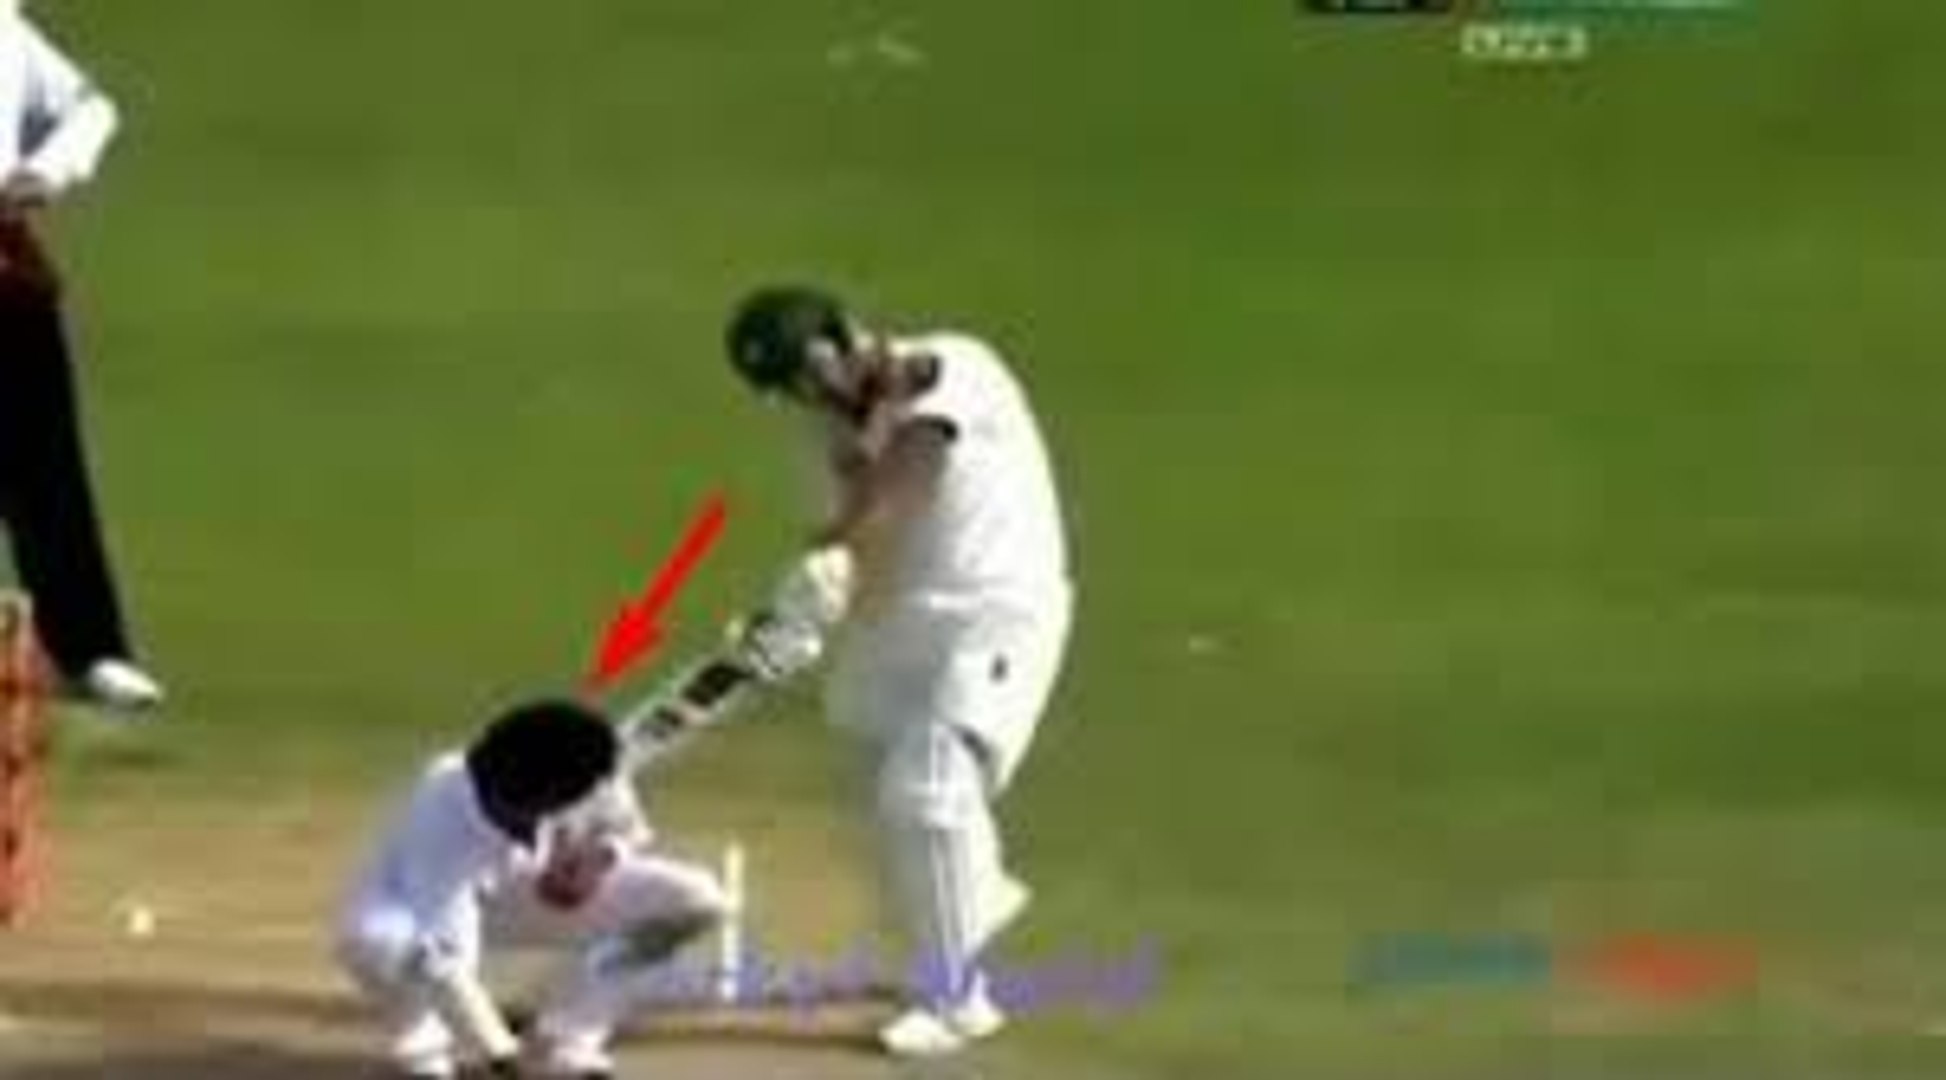 Umar Akmal hits Indian Bowler with his bat Pak vs Ind